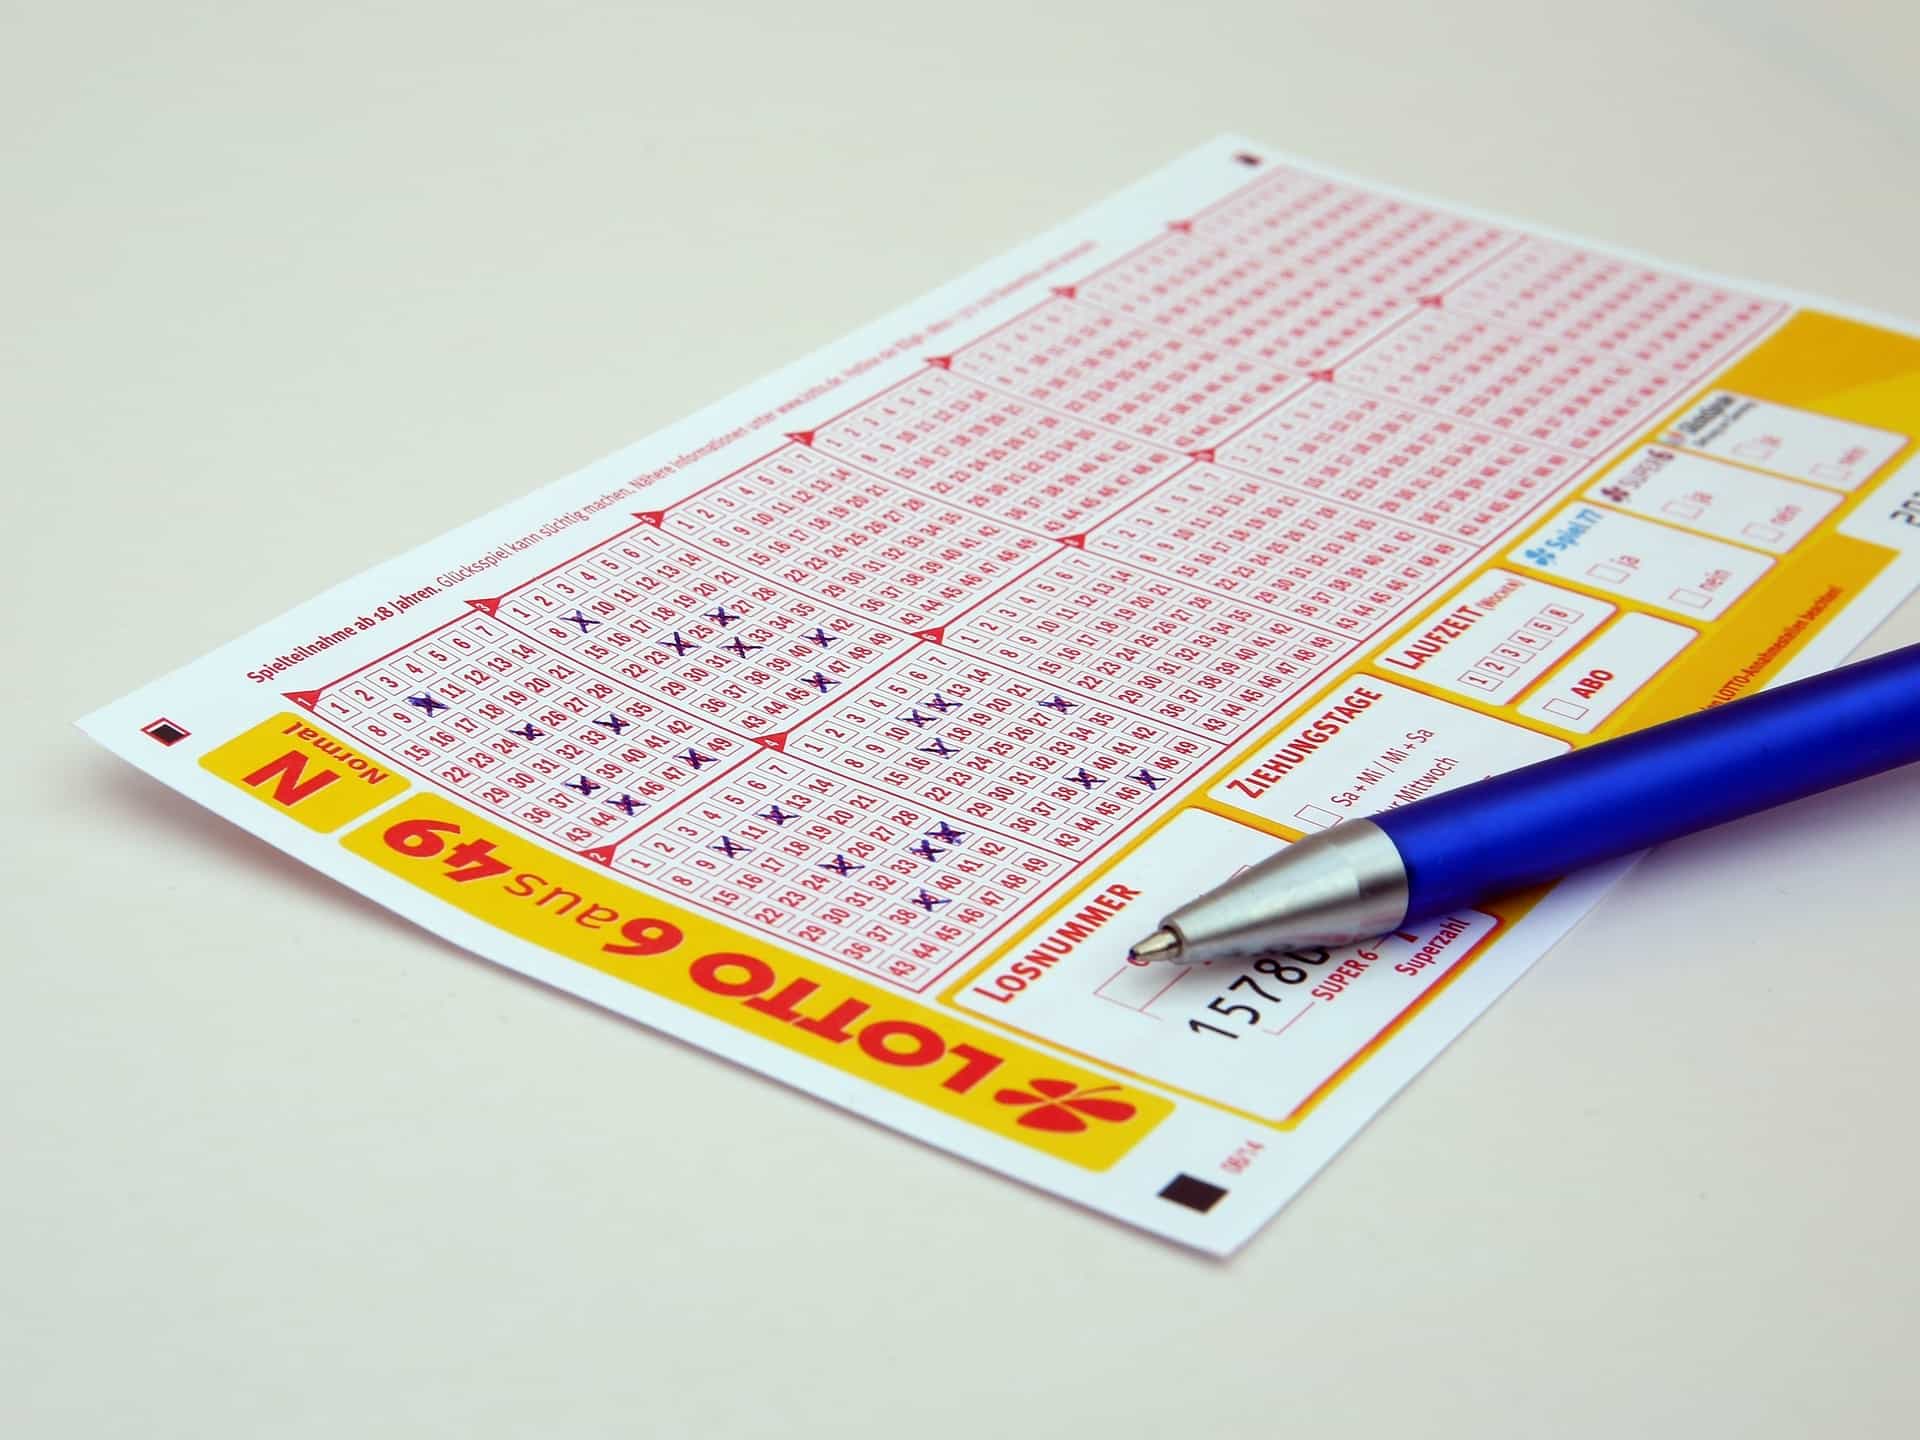 Aufnahme eines Lottoscheins aus dem Spiel Lotto 6aus49.